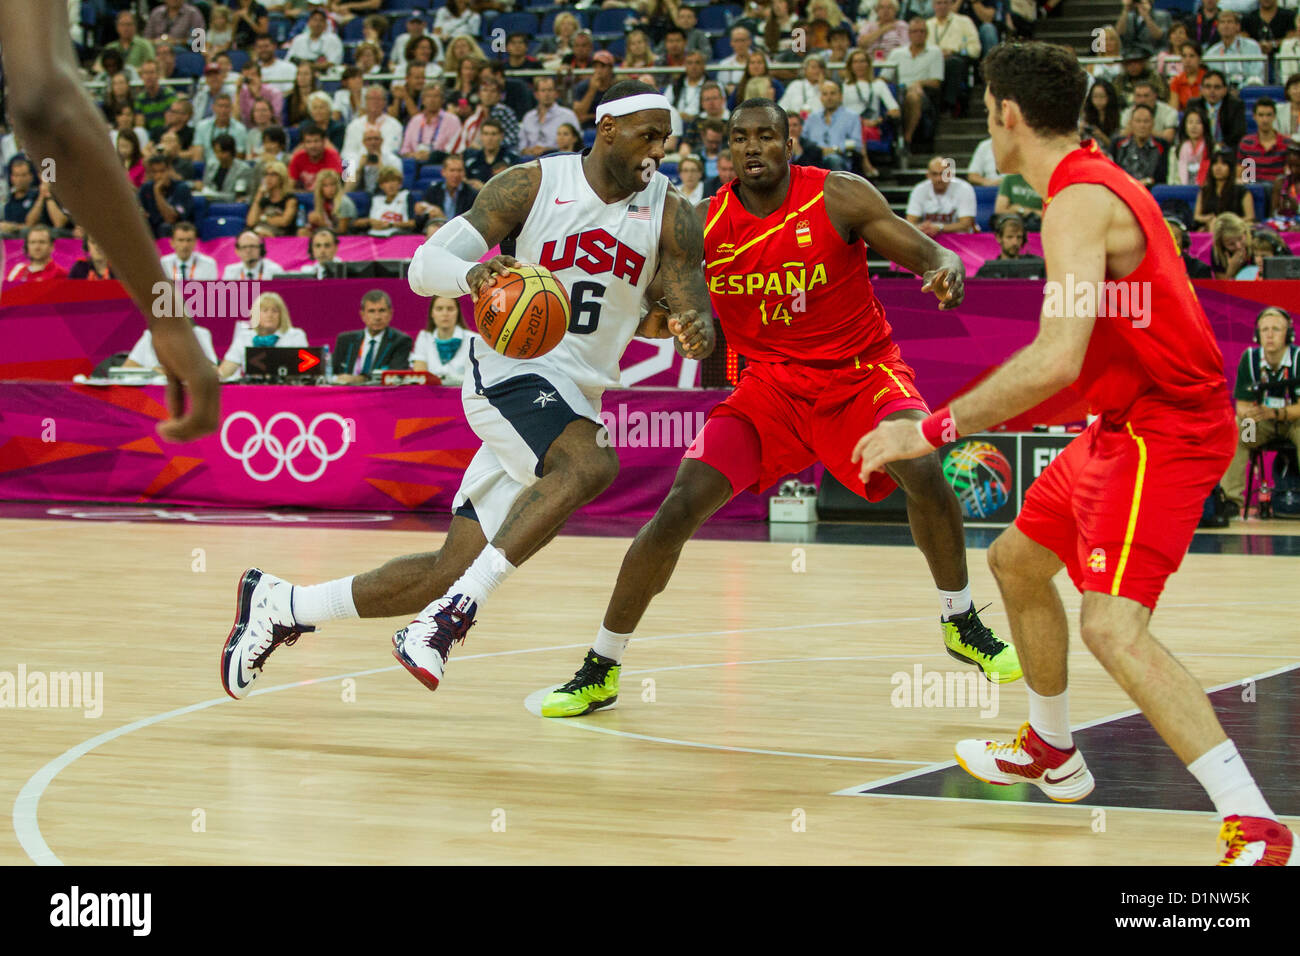 Lebron James (USA) qui se font concurrence sur la médaille d'or jeu de basket-ball aux Jeux Olympiques d'été, Londres 2012 Banque D'Images